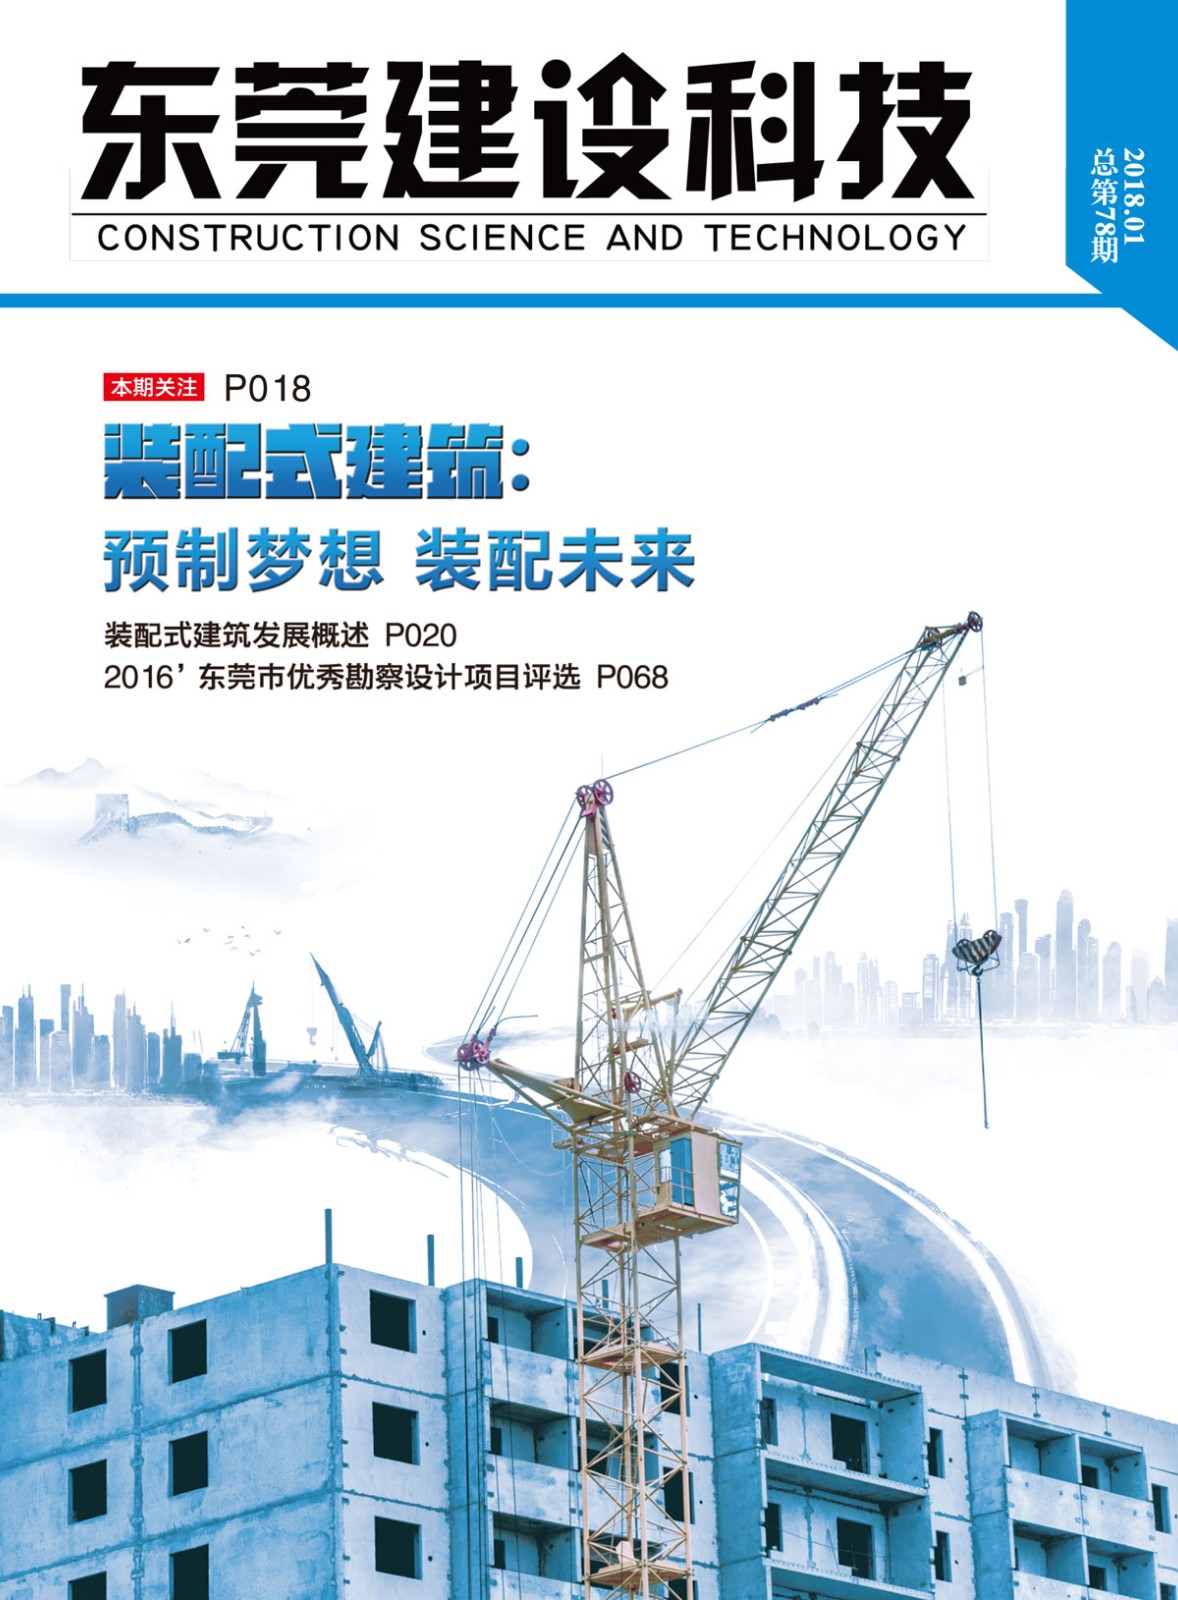 《东莞建设科技》第78期